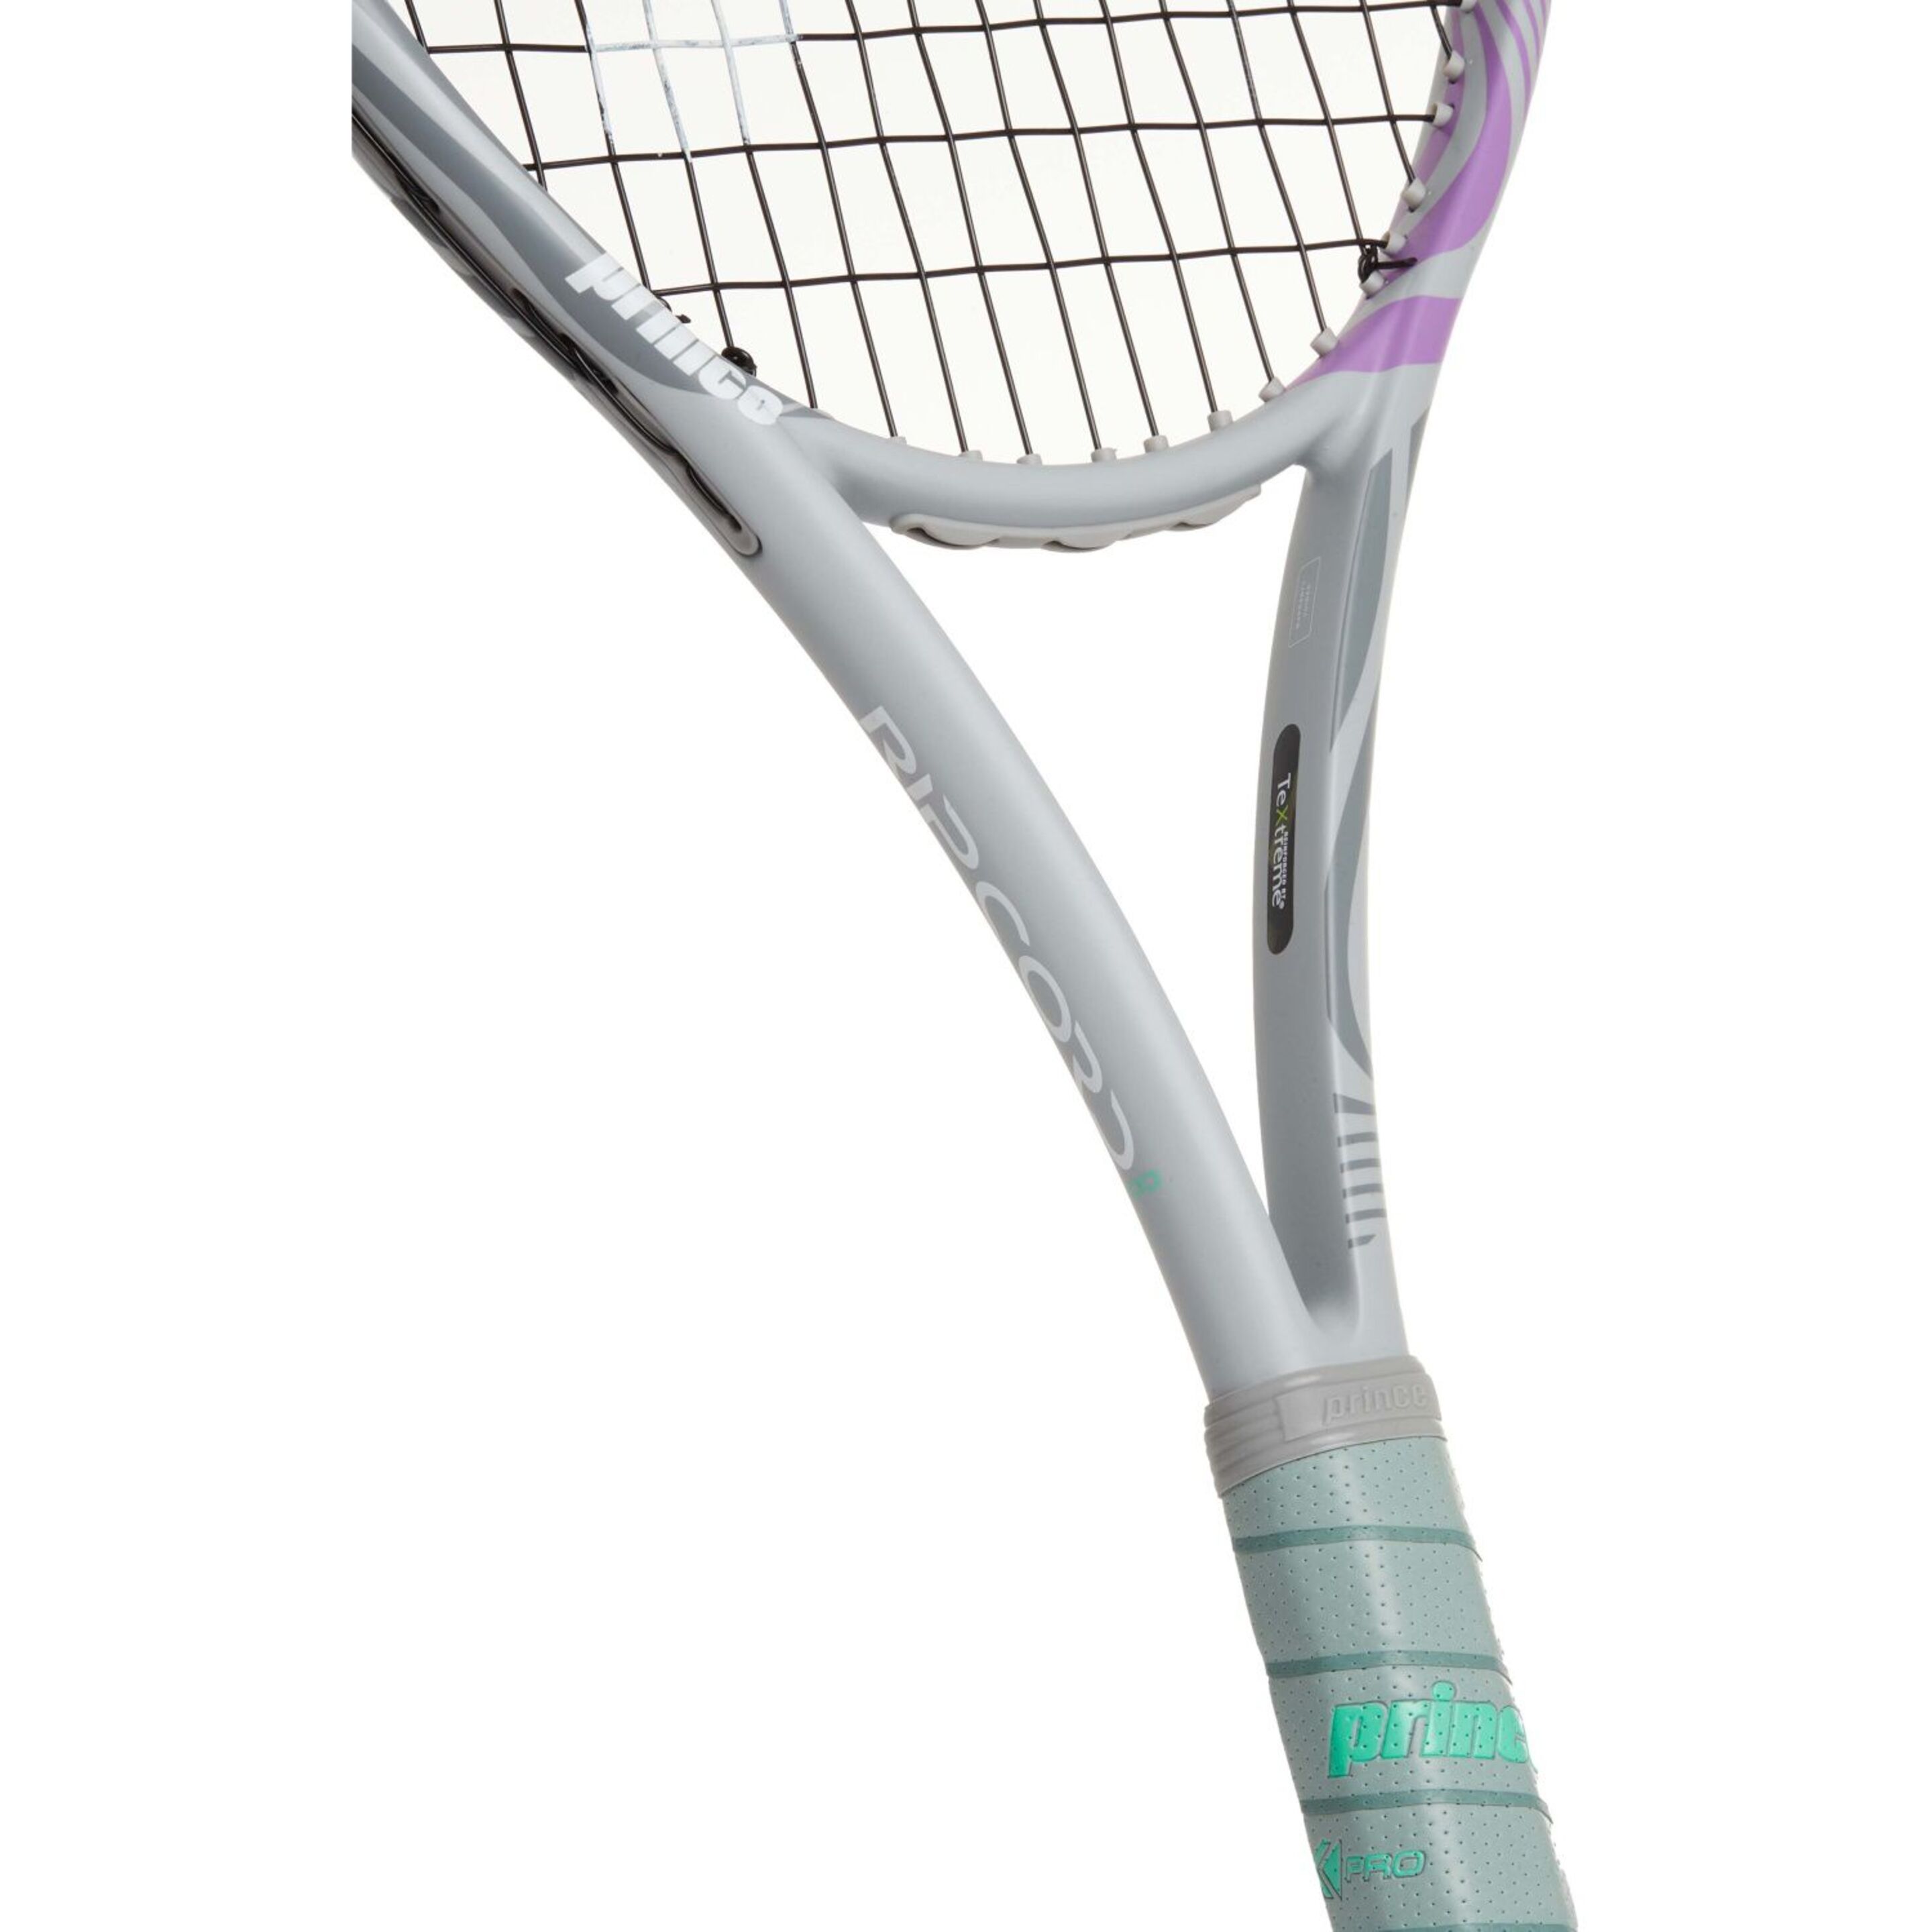 Raqueta De Tenis Prince Ripcord 100 265 G (encordada Y Con Funda)